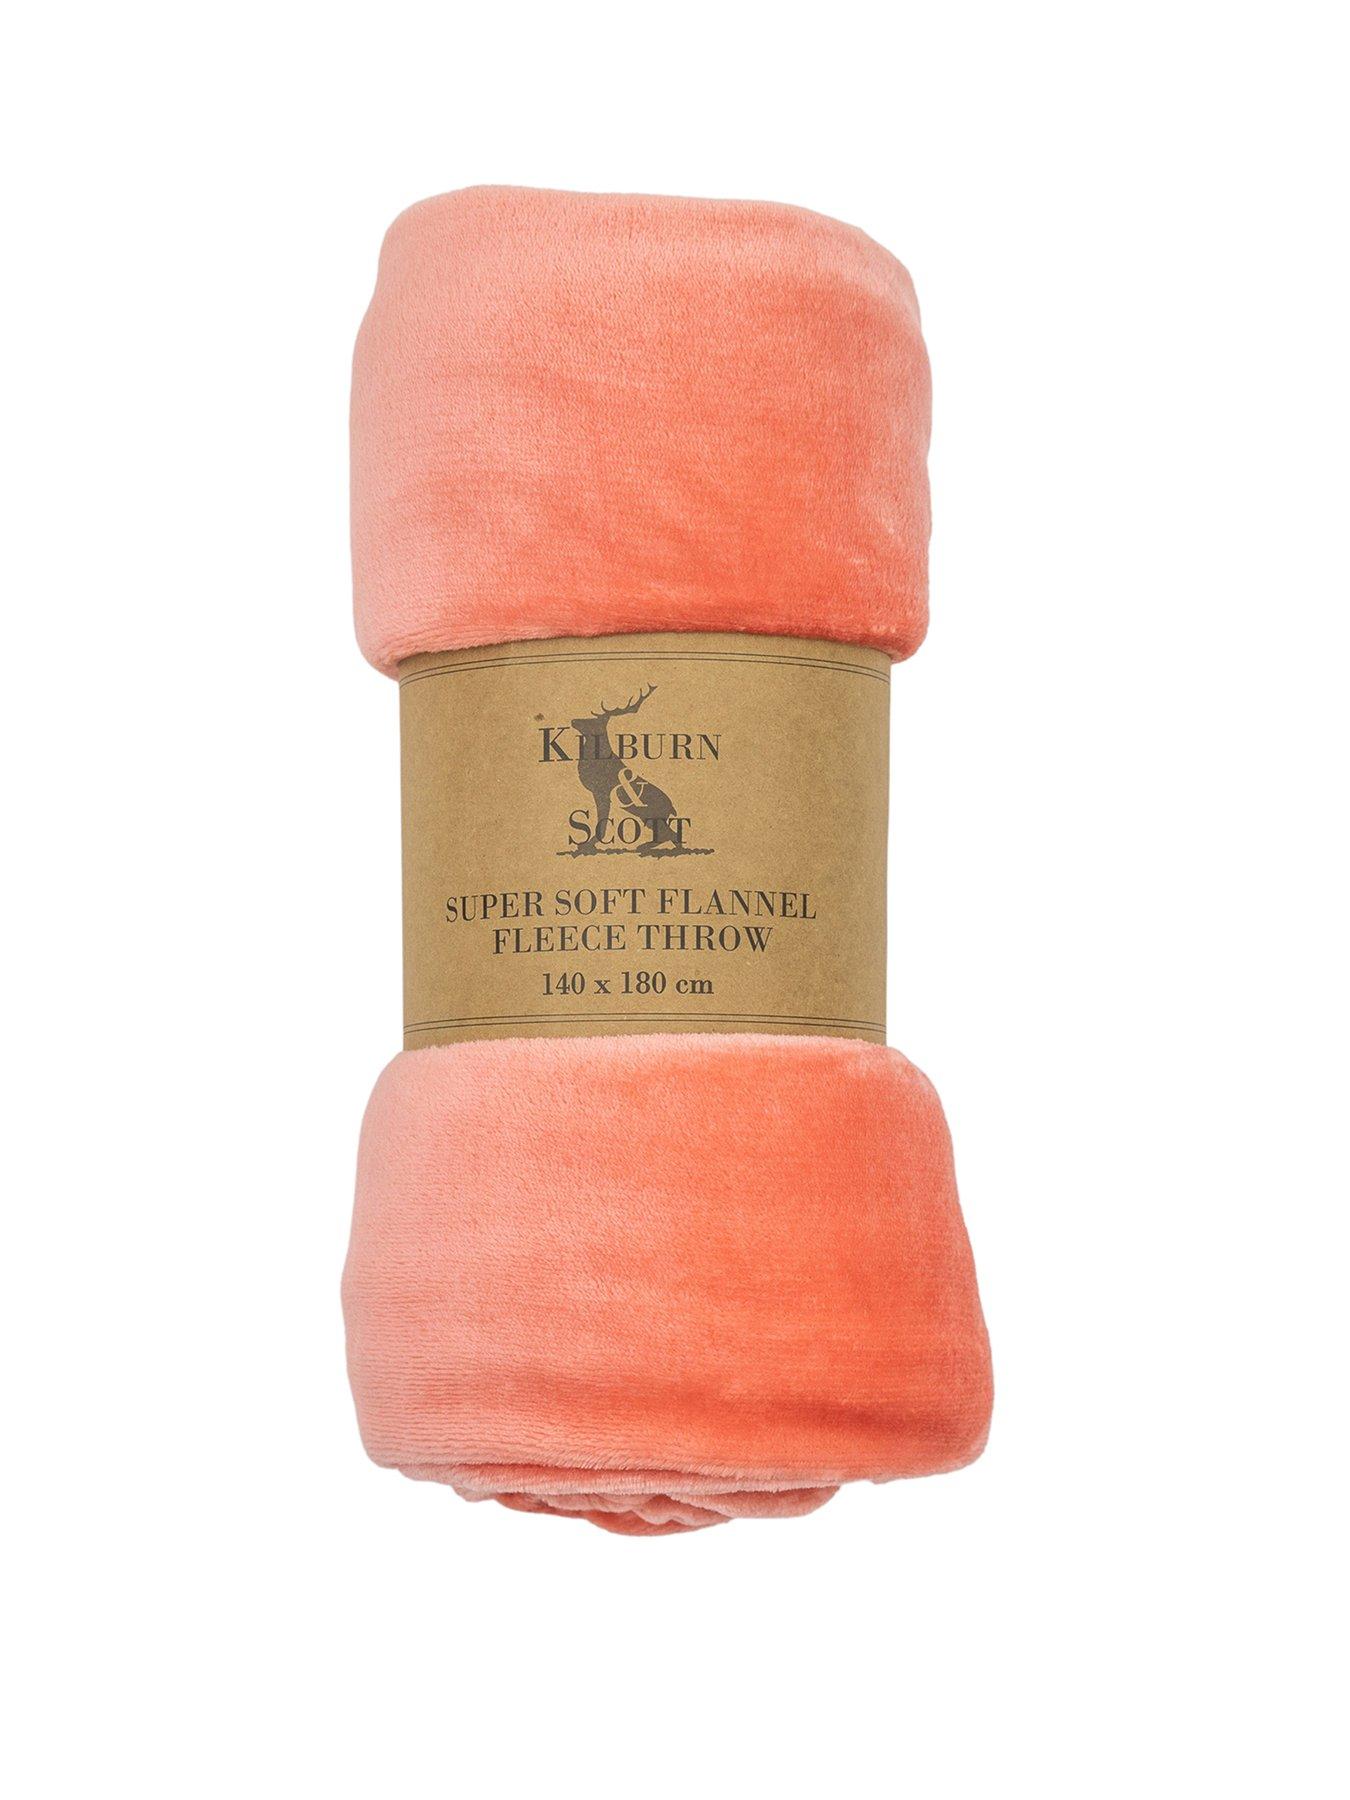 Chăn mền flannel Kilburn & Scott Lois: Chăn mền flannel Kilburn & Scott Lois là sản phẩm cao cấp, giúp bạn có giấc ngủ ngon và ấm áp hơn. Chất liệu flannel mềm mại và ấm áp giúp cho bạn có giấc ngủ ngon và thoải mái nhất. Đón chào năm 2024, sản phẩm này đã được cập nhật thêm màu sắc mới, giúp bạn có thêm nhiều lựa chọn cho không gian của mình.